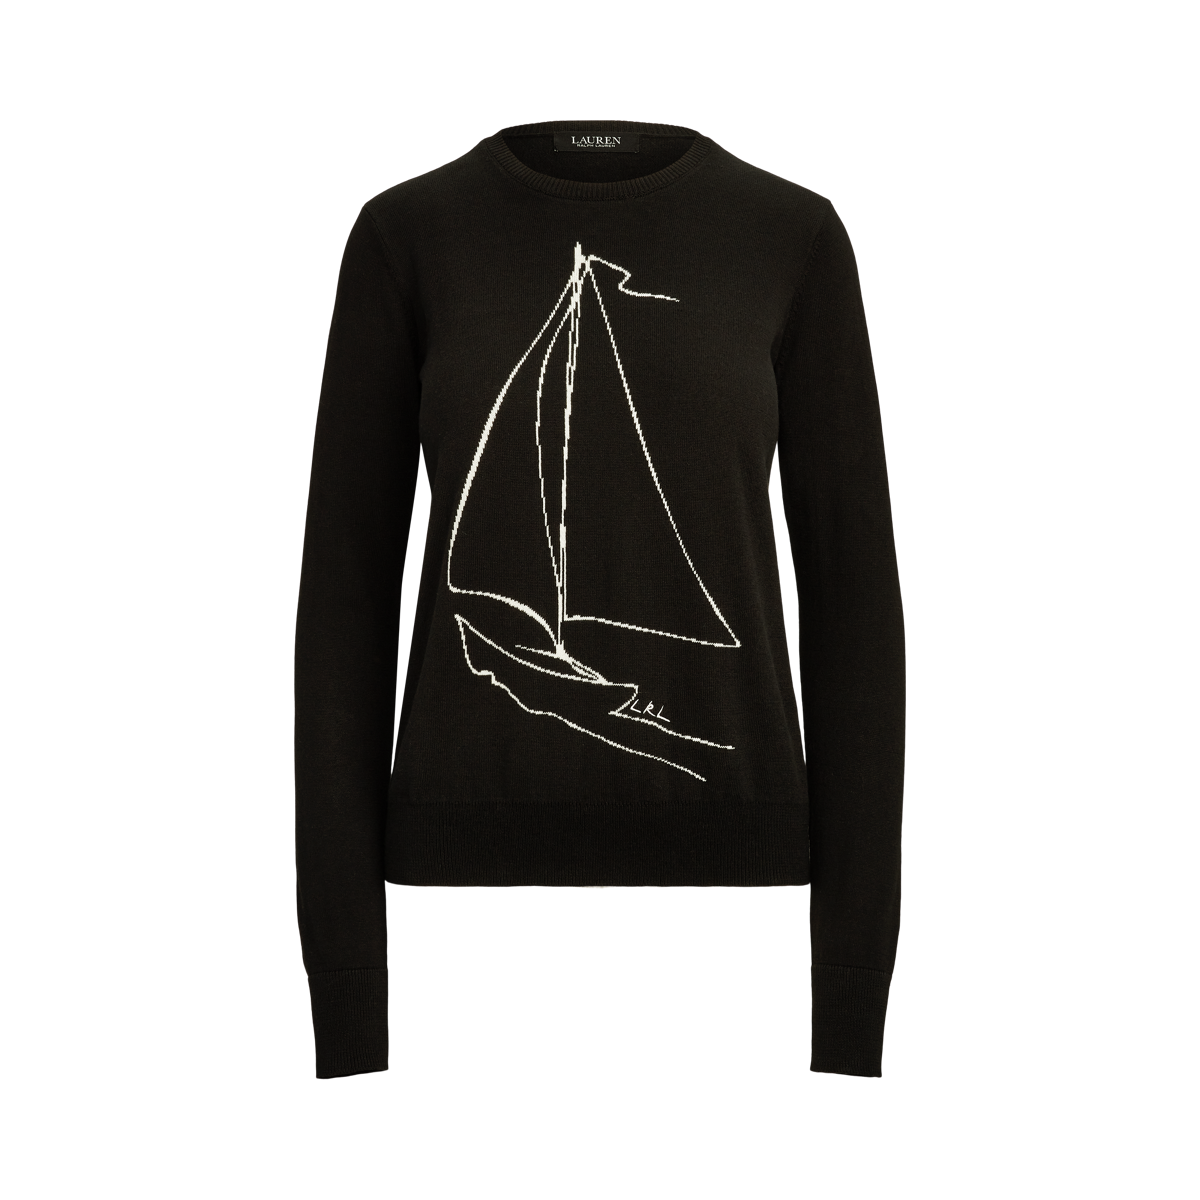 Sailboat Intarsia-Knit Crewneck Sweater